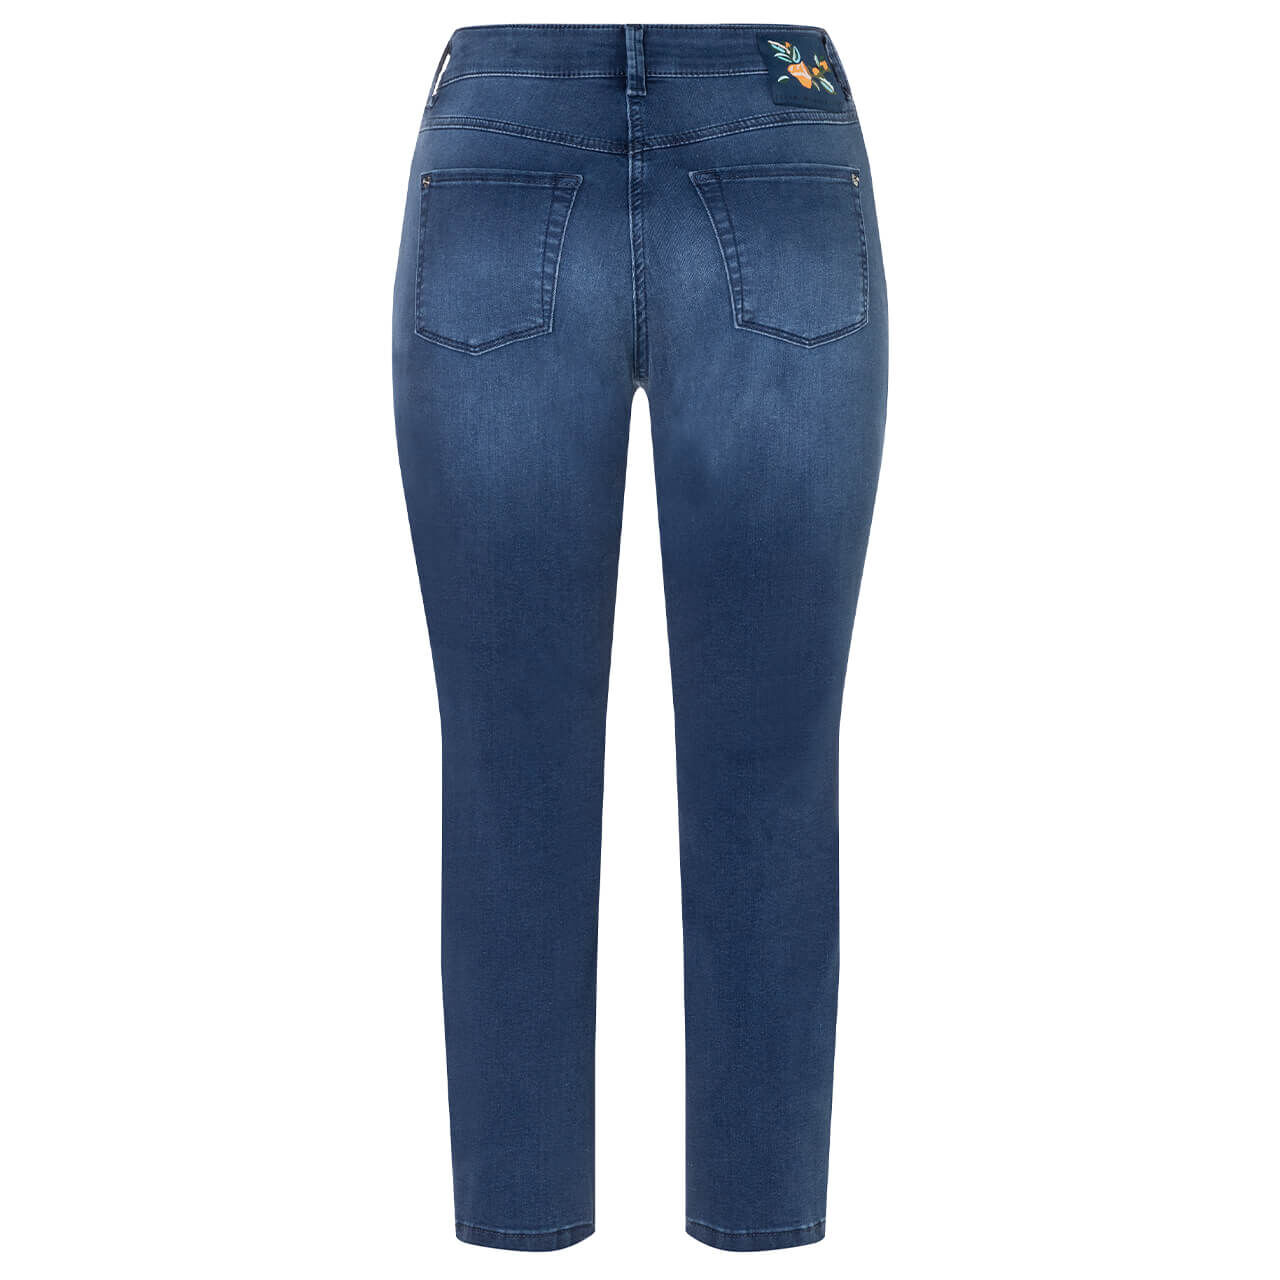 MAC Dream Summer 7/8 Jeans basic used mid blue wonderlight